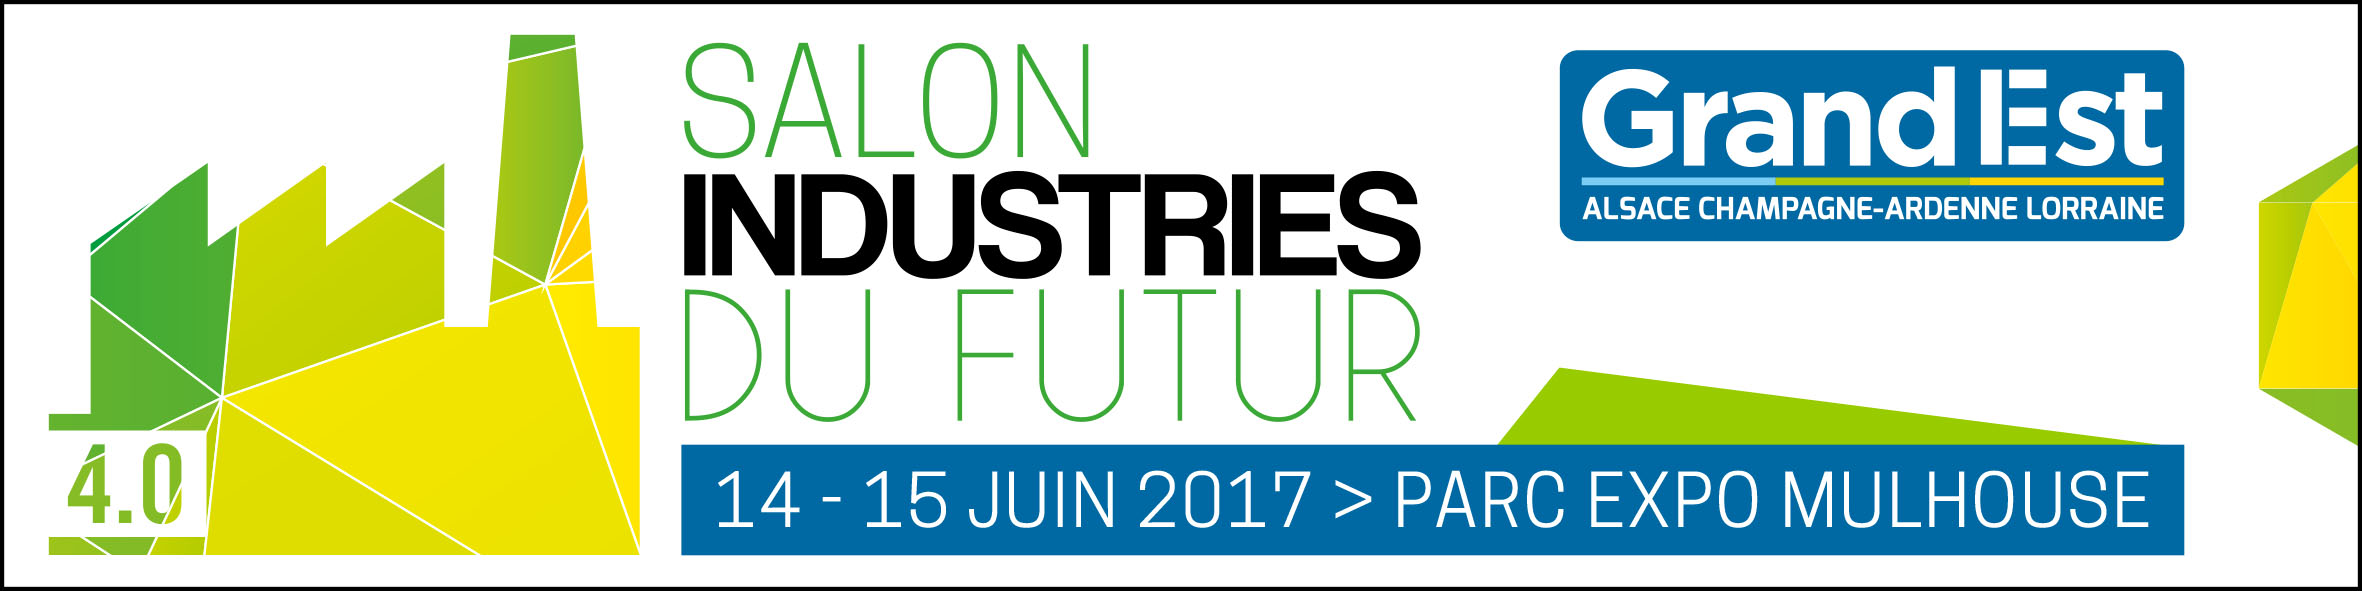 Salon des Industries du Futur – 14 & 15 juin 2017 au Parc Expo Mulhouse